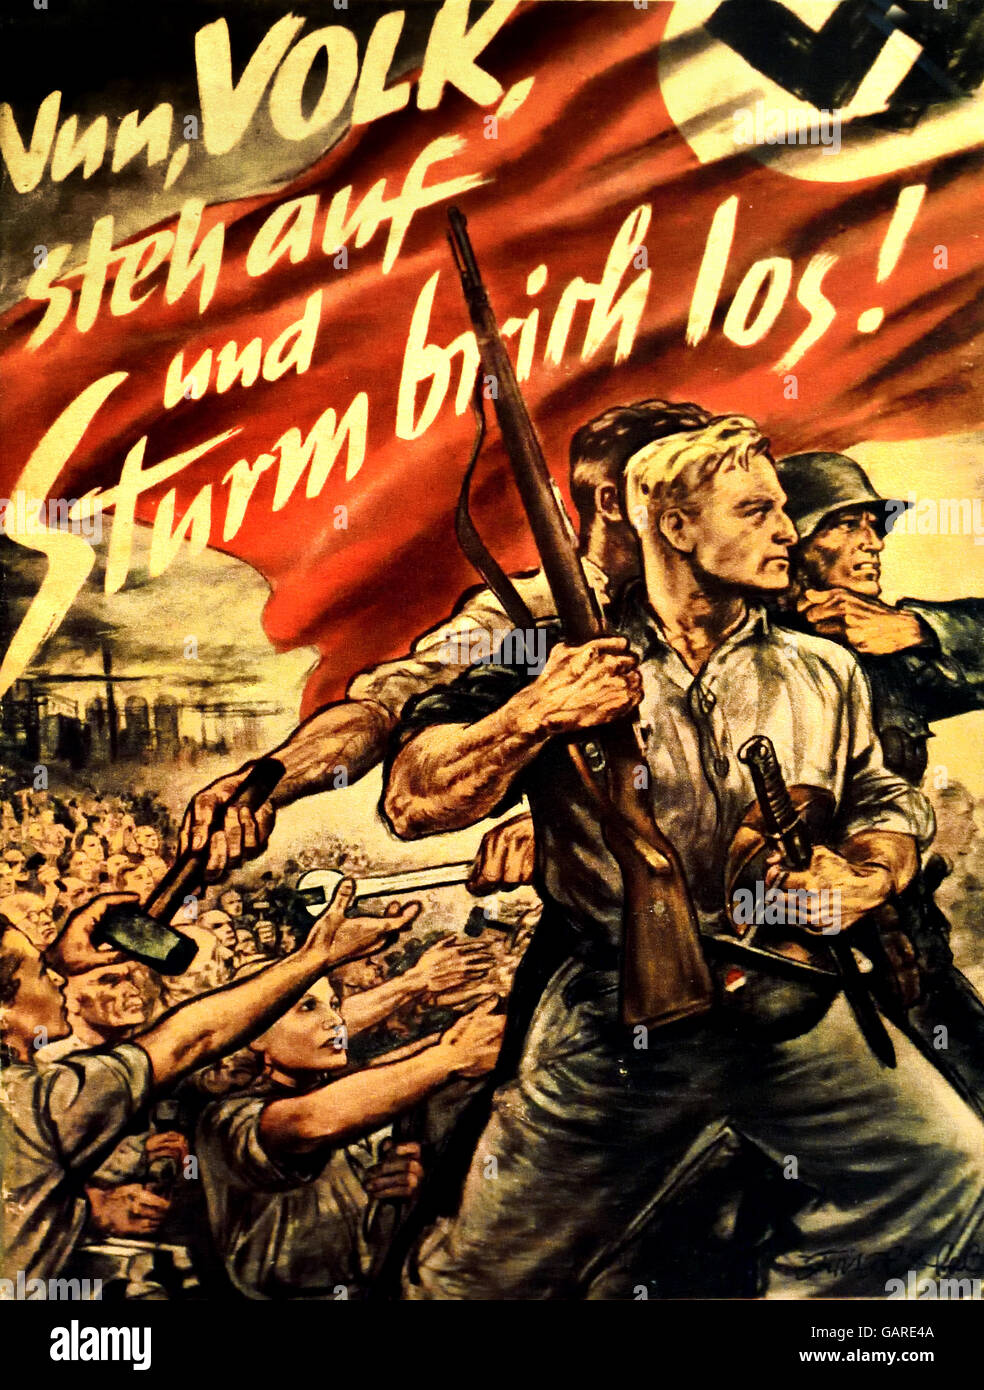 Nun, Volk Steh auf und Srurm brich los ! Ora, la gente e la tempesta si allentano e si rompono! Joseph Goebbels 1897-1945 Berlino Germania nazista Foto Stock